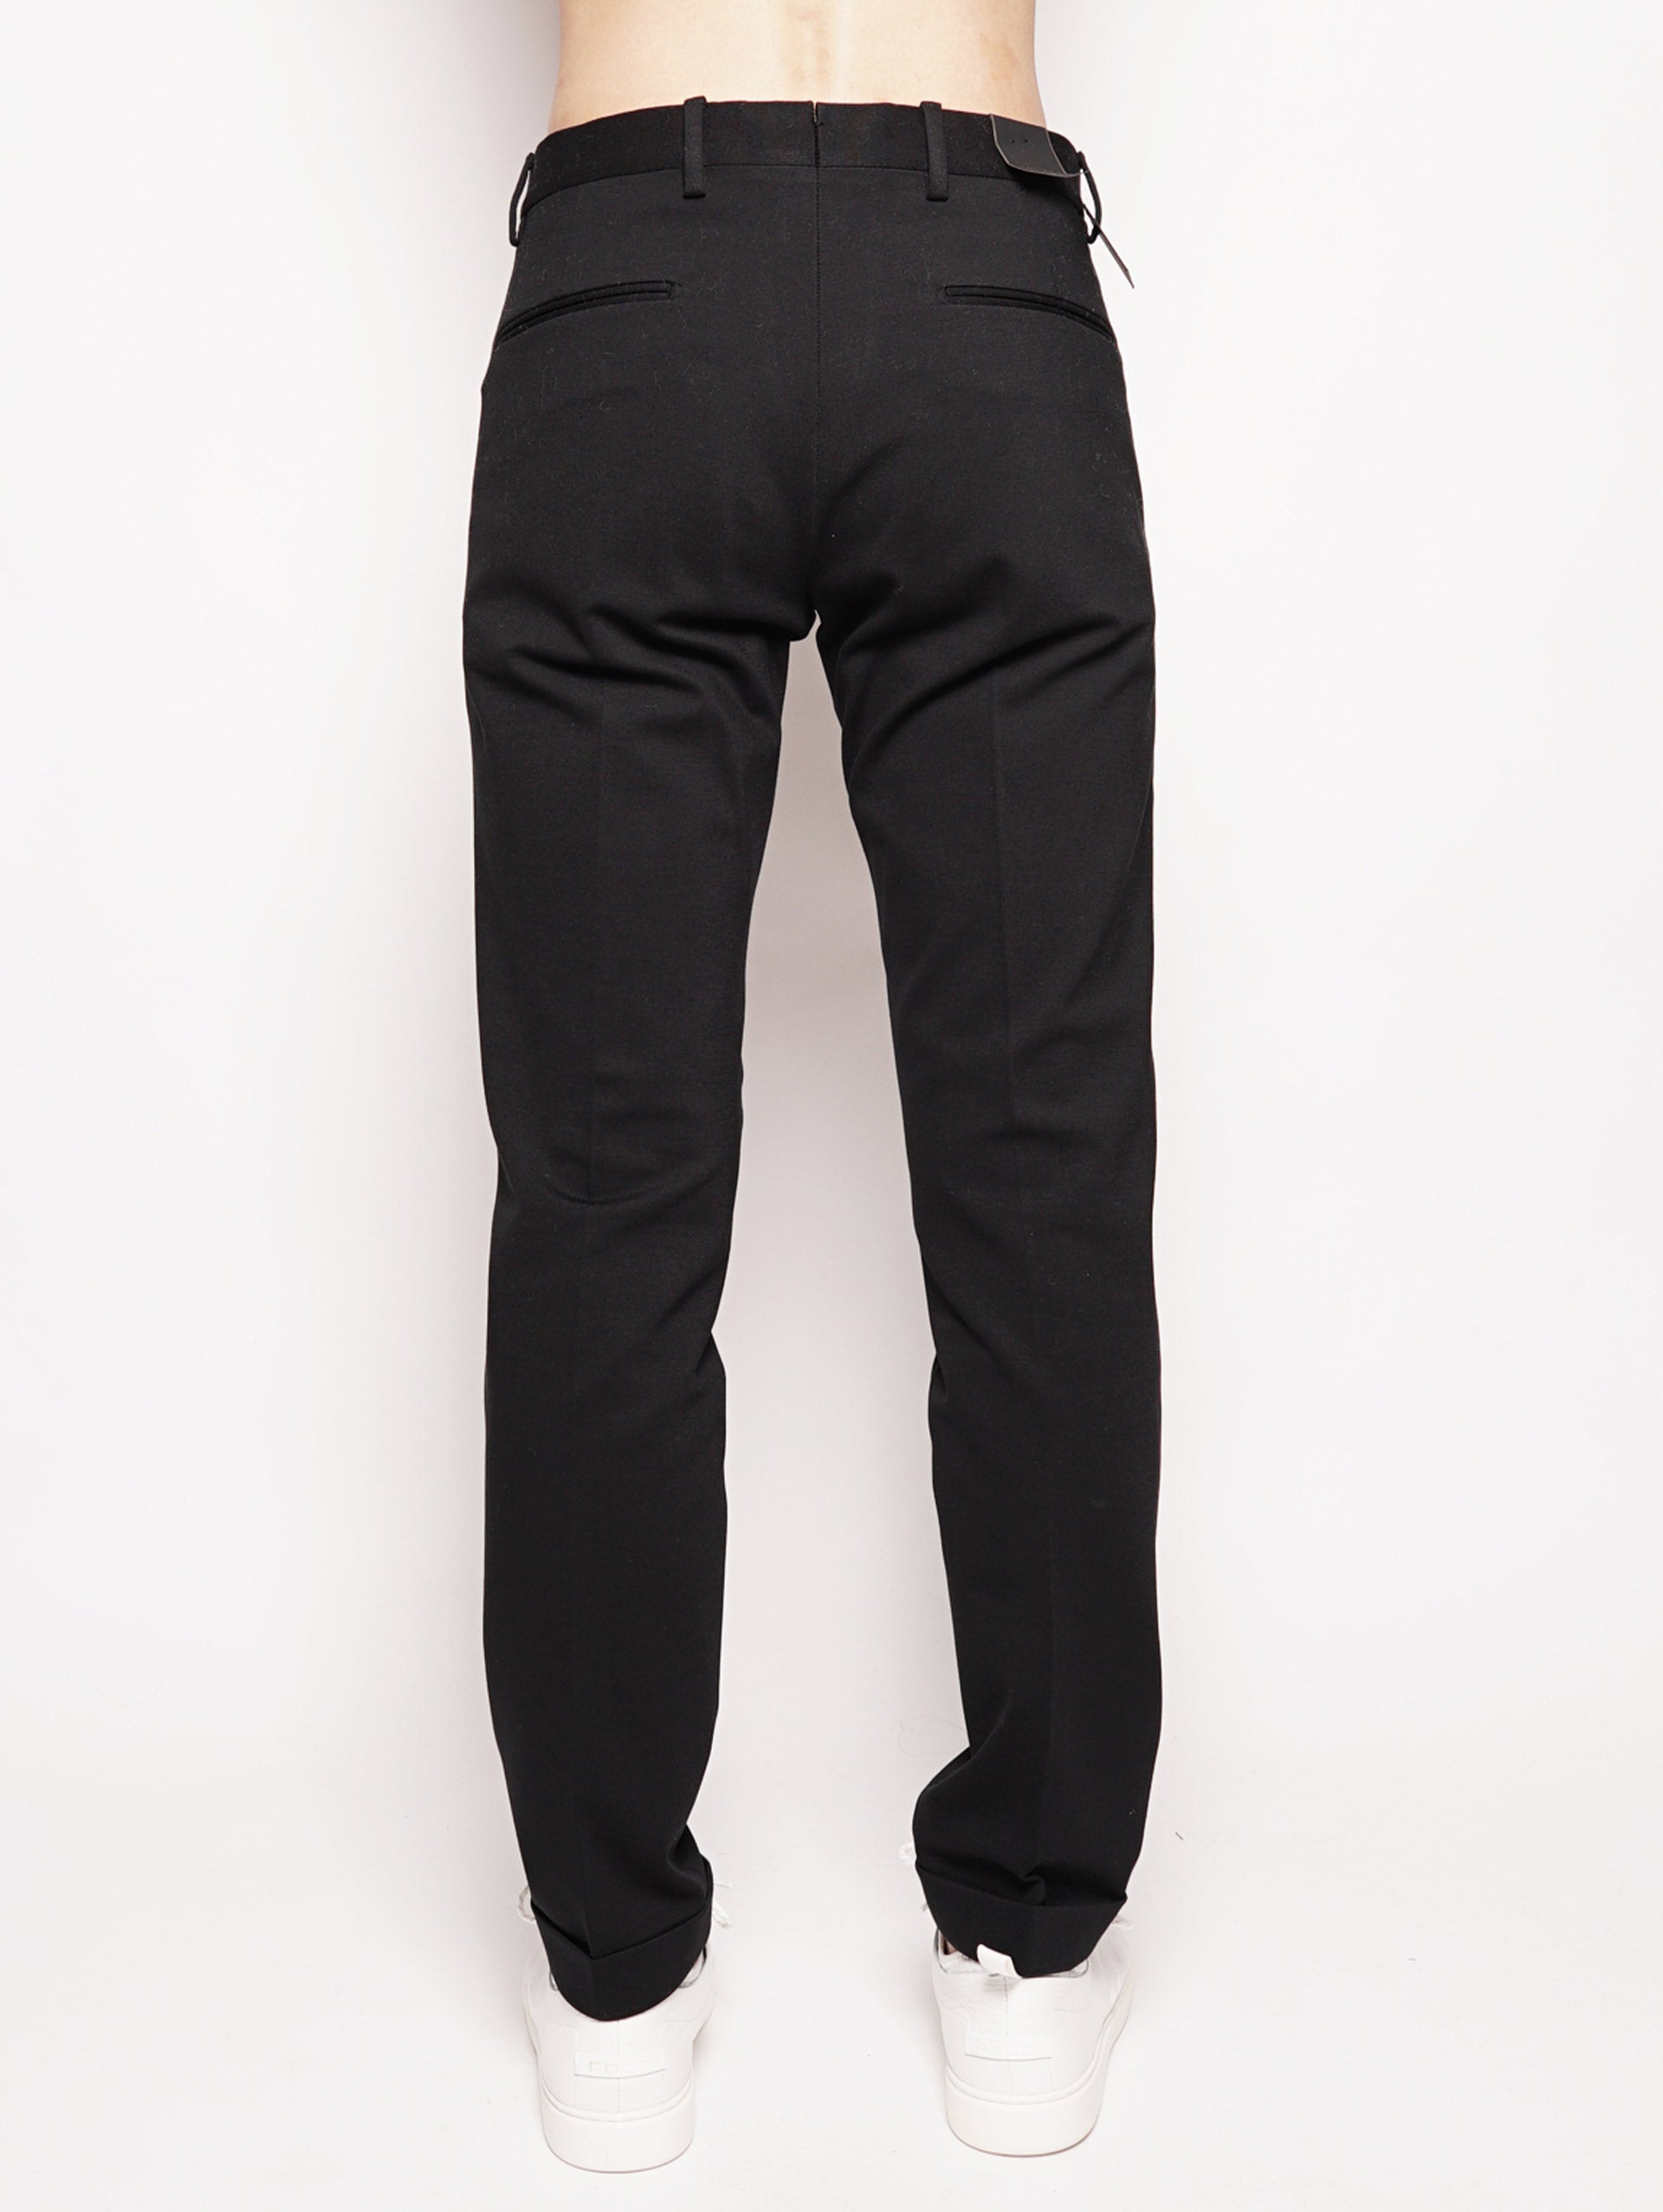 Pantaloni sartoriali in cotone stretch - BG03S Nero-Pantaloni-BRIGLIA 1949-TRYME Shop